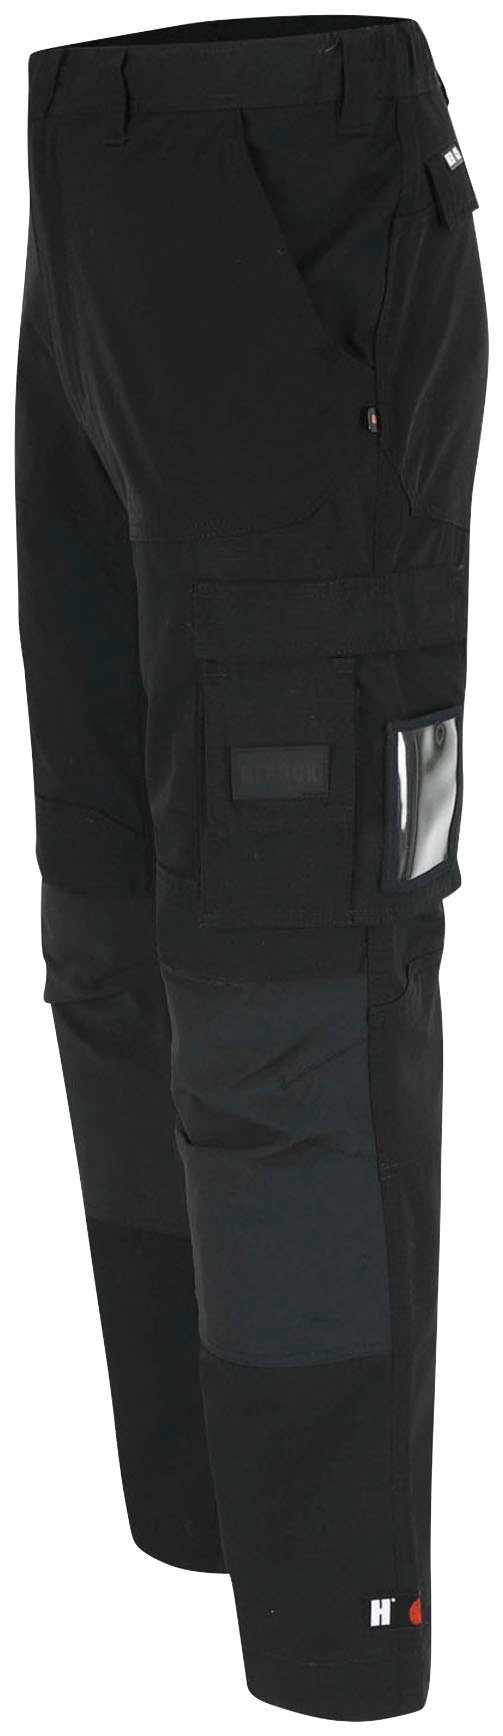 Hector Herock verdeckter Knietaschen Arbeitshose schwarz Knopf, verstärkte Hoses Multi-Pocket, 4-Wege-Stretch,